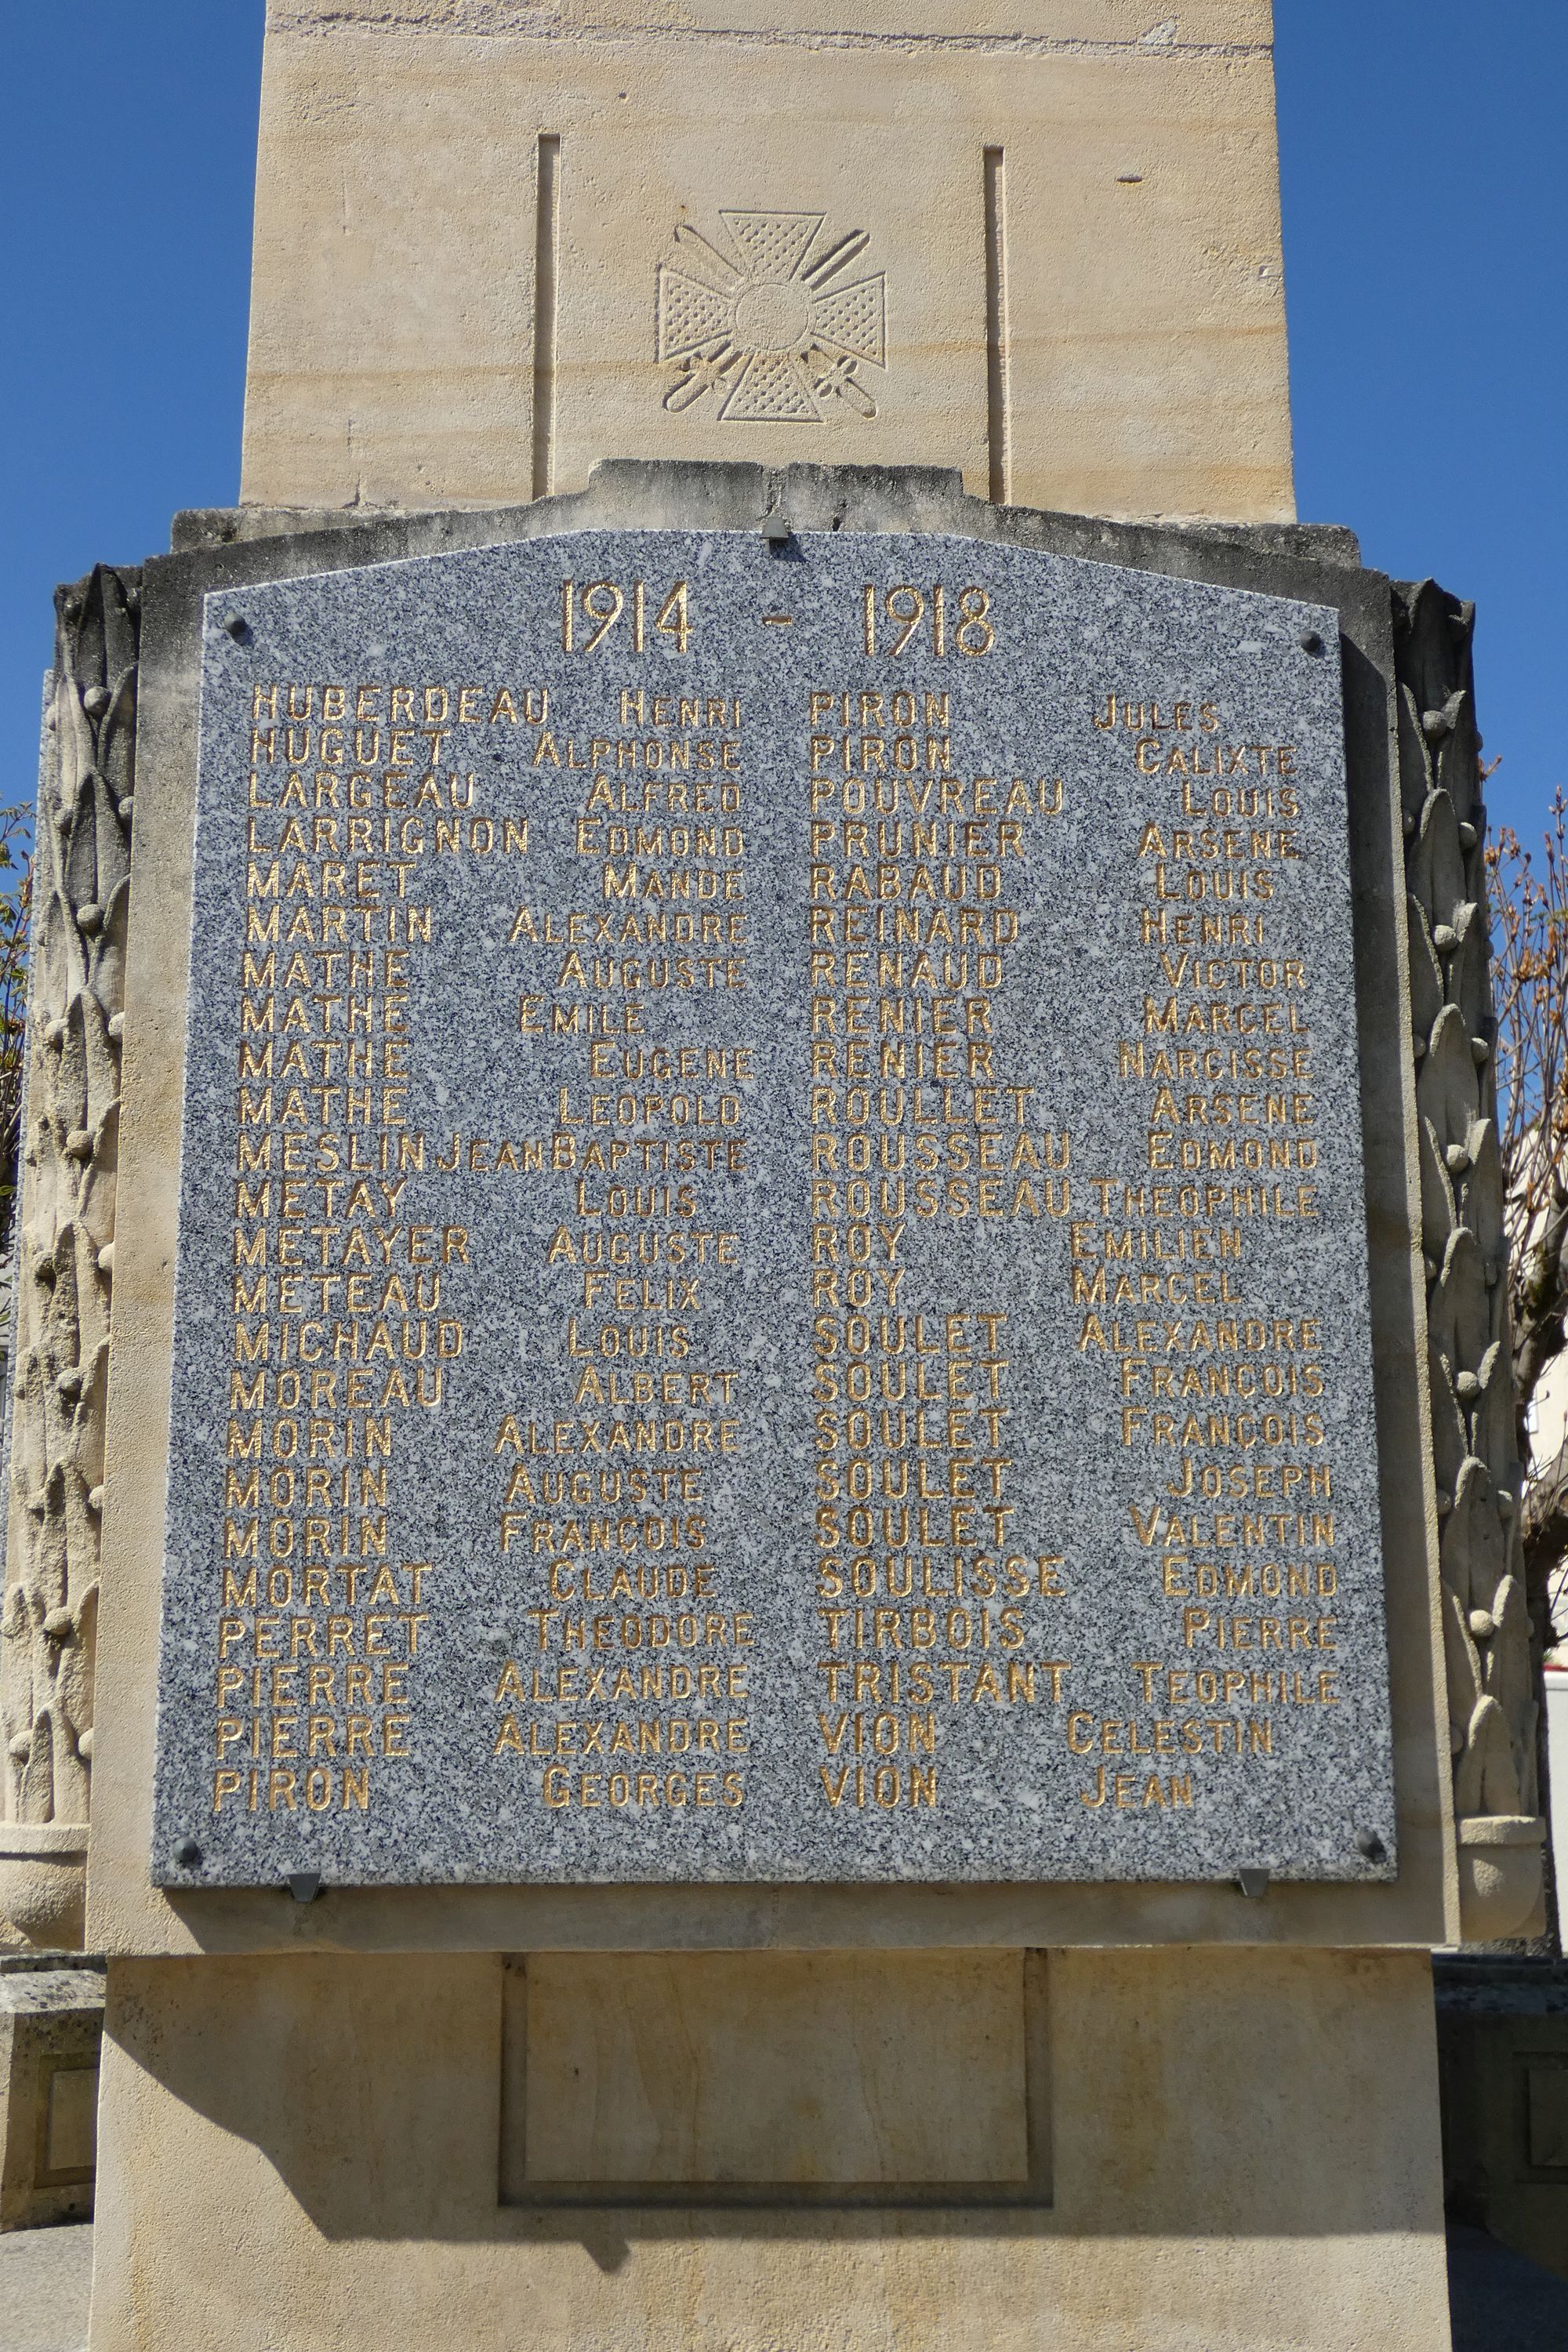 Monument aux morts de Benet